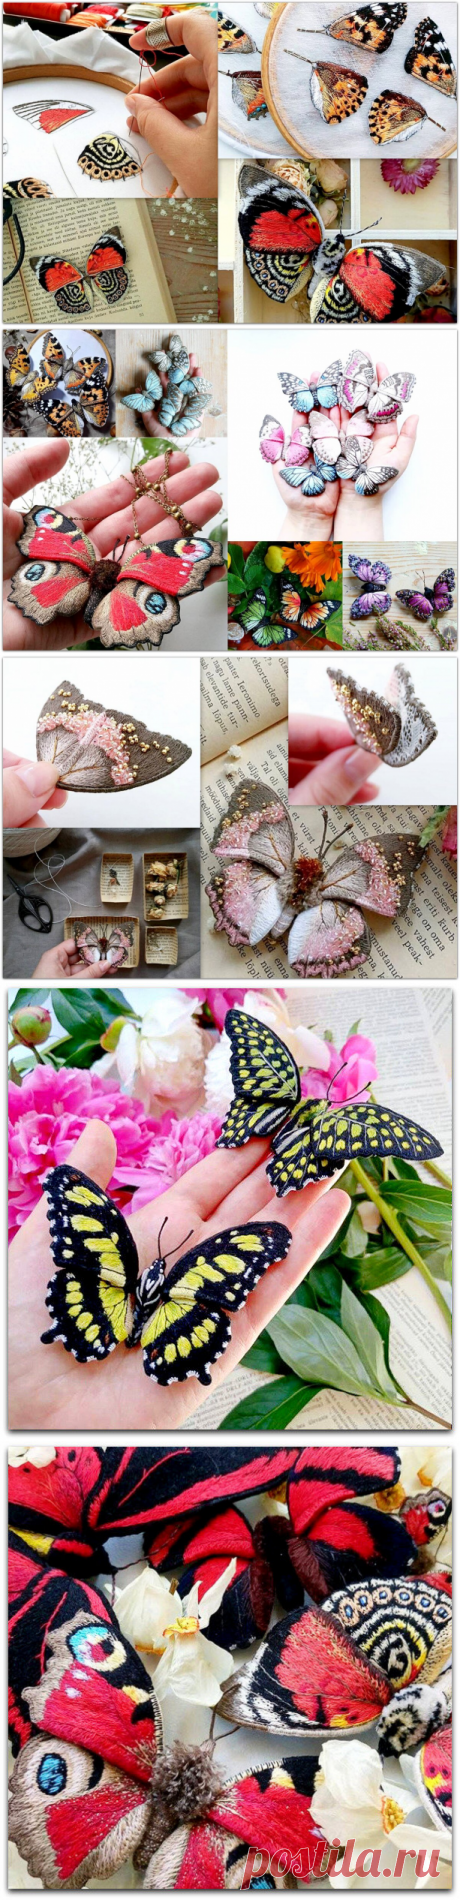 Эстонская мастерица вышивает удивительные броши-бабочки — они словно живые | Paradosik_Handmade | Яндекс Дзен